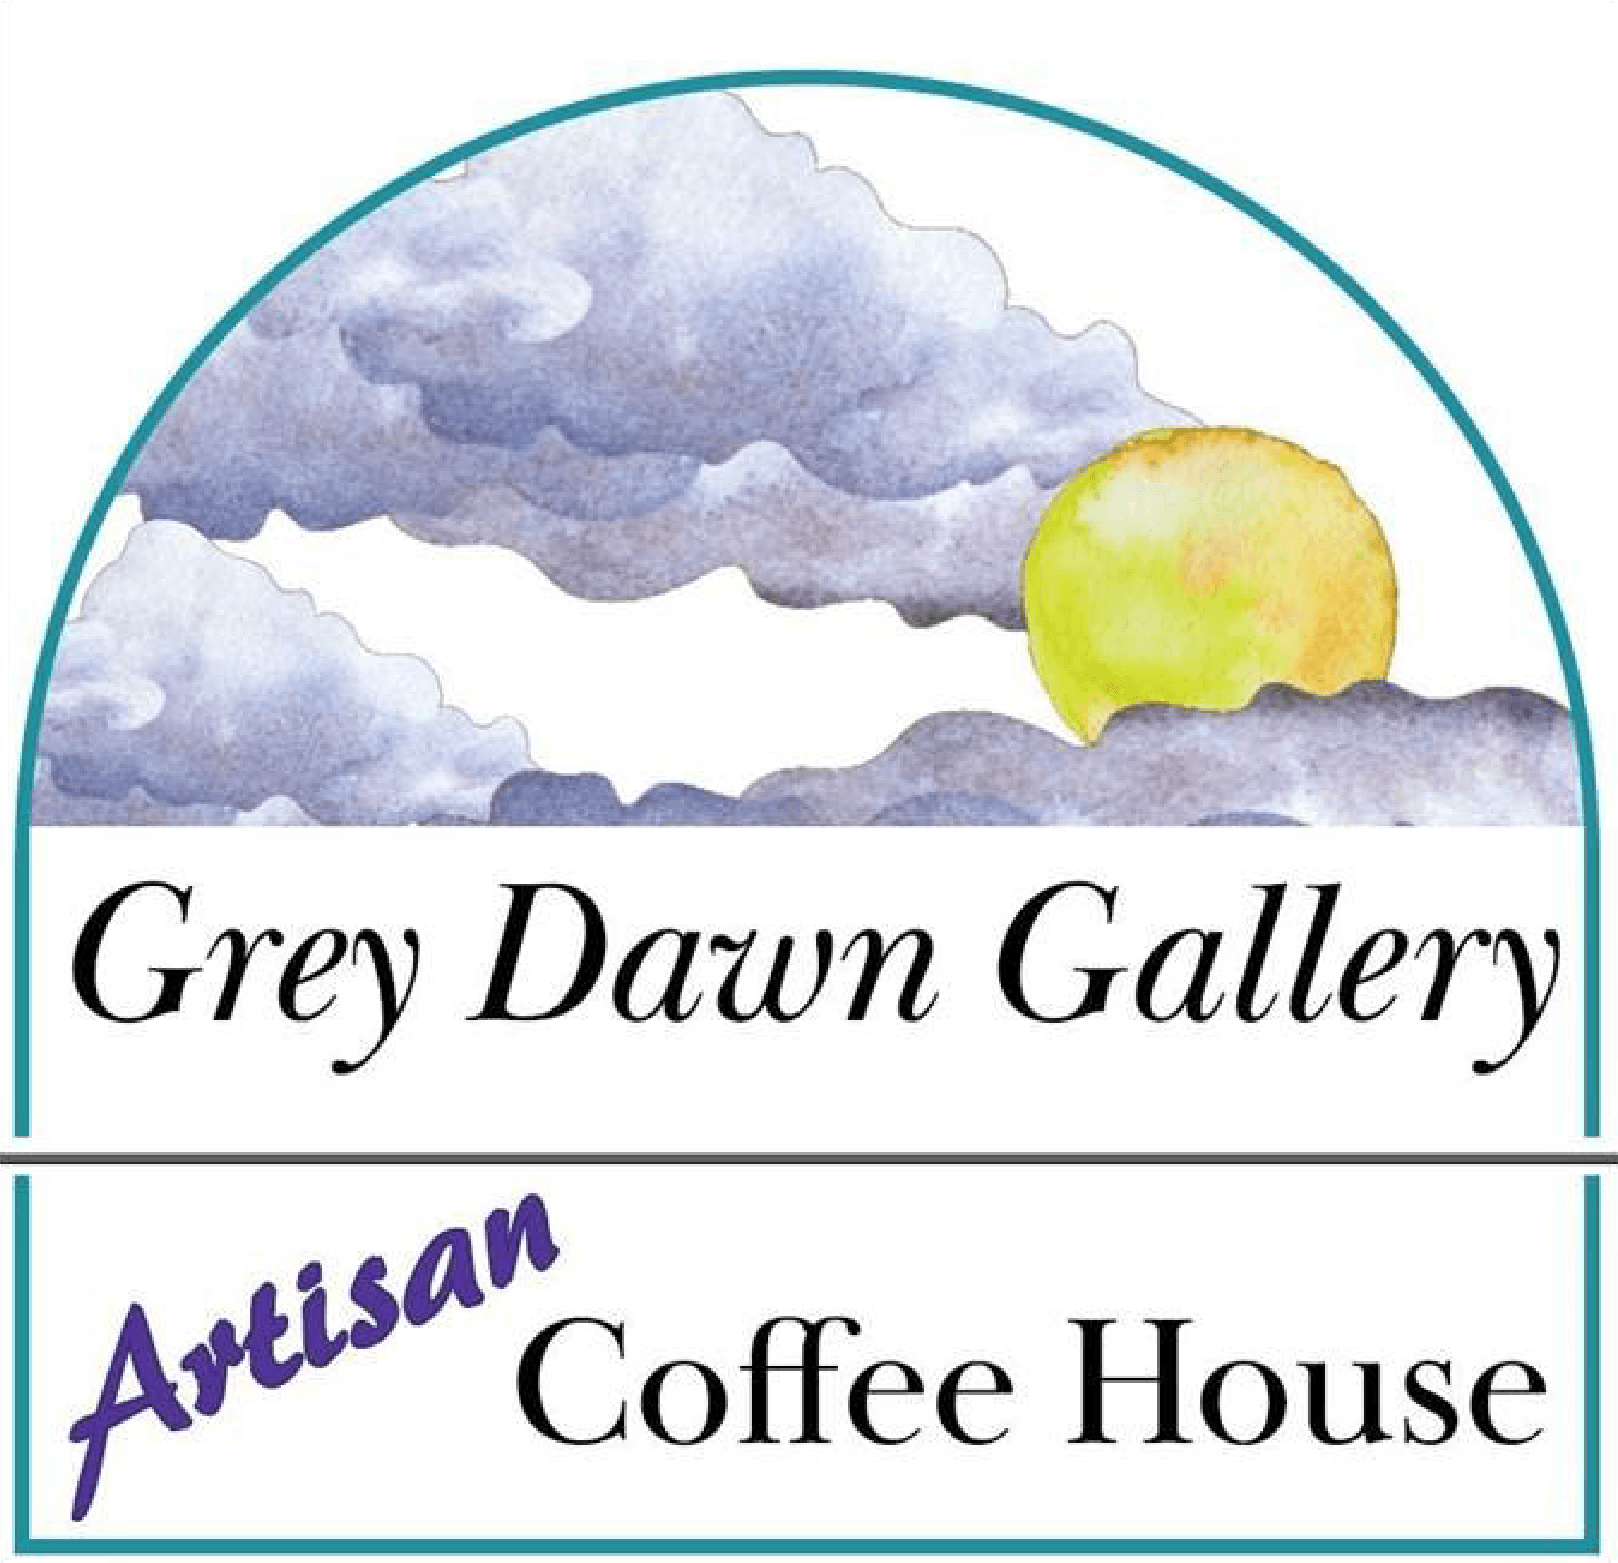 Greydawn Gallery & Artisan Coffee Shop